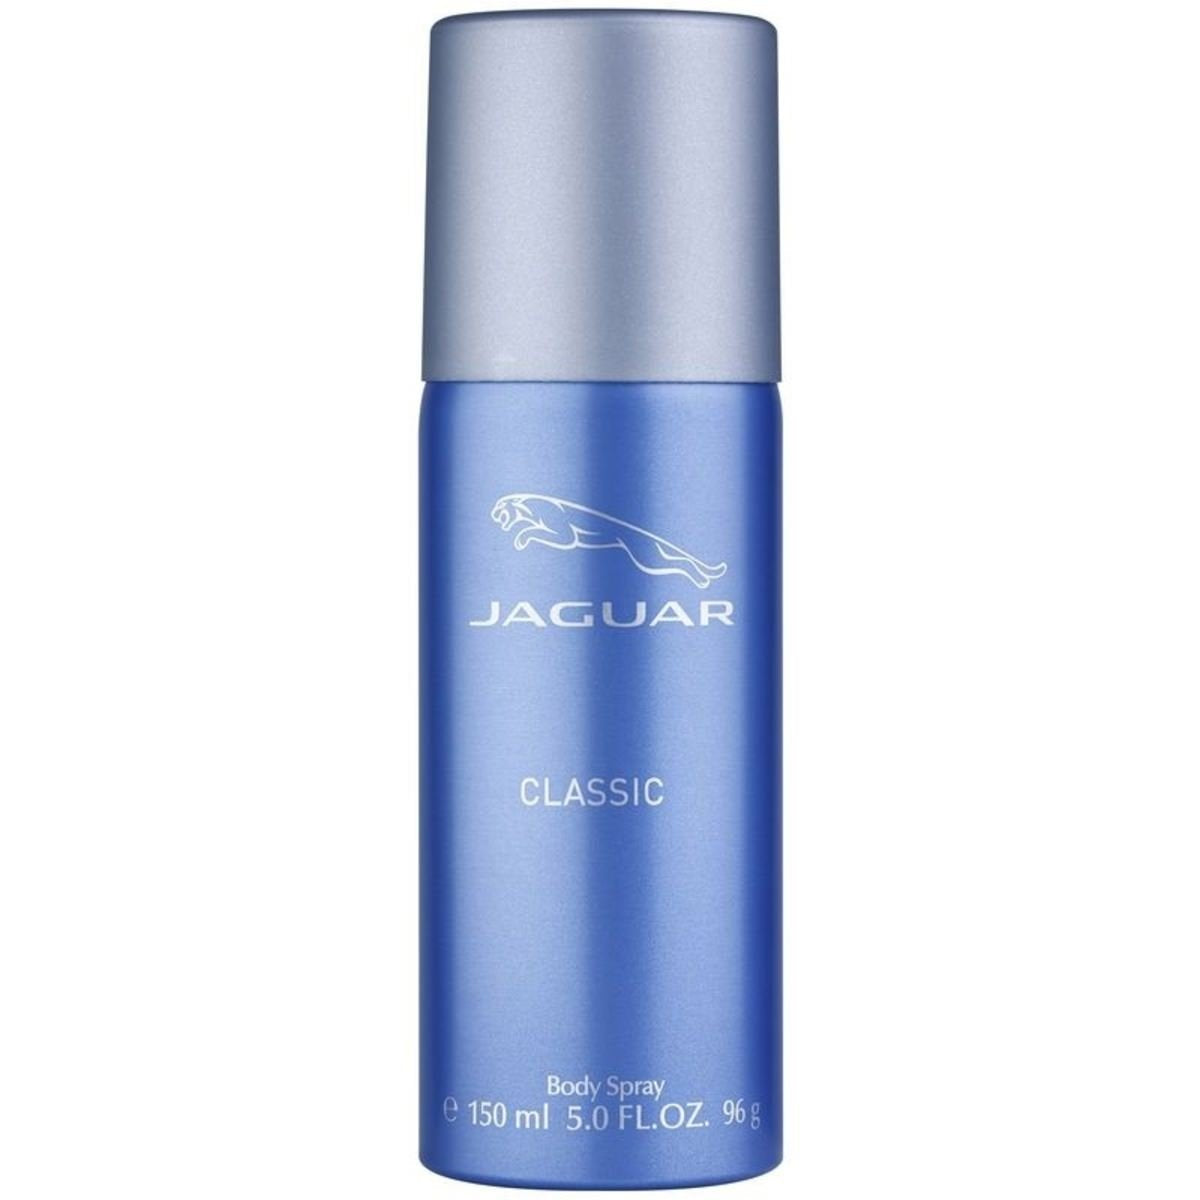 Jaguar Classic Body Spray for Men (150ml) - Niram